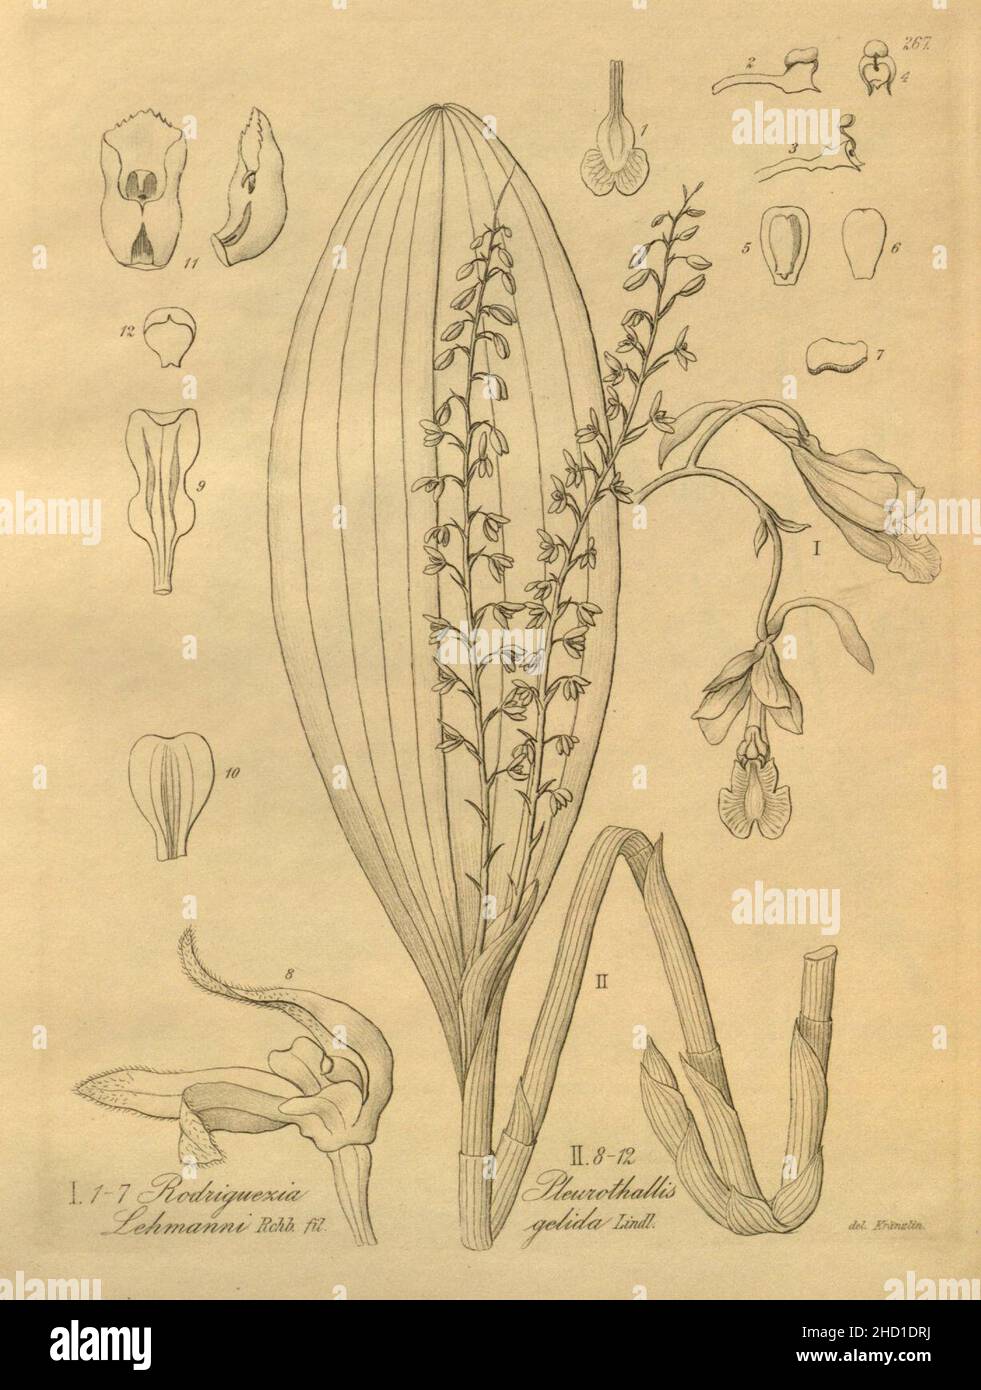 Rodriguezia lehmannii - Stelis gelida (as Pleurothallis gelida) - Xenia 3 pl 267. Stock Photo